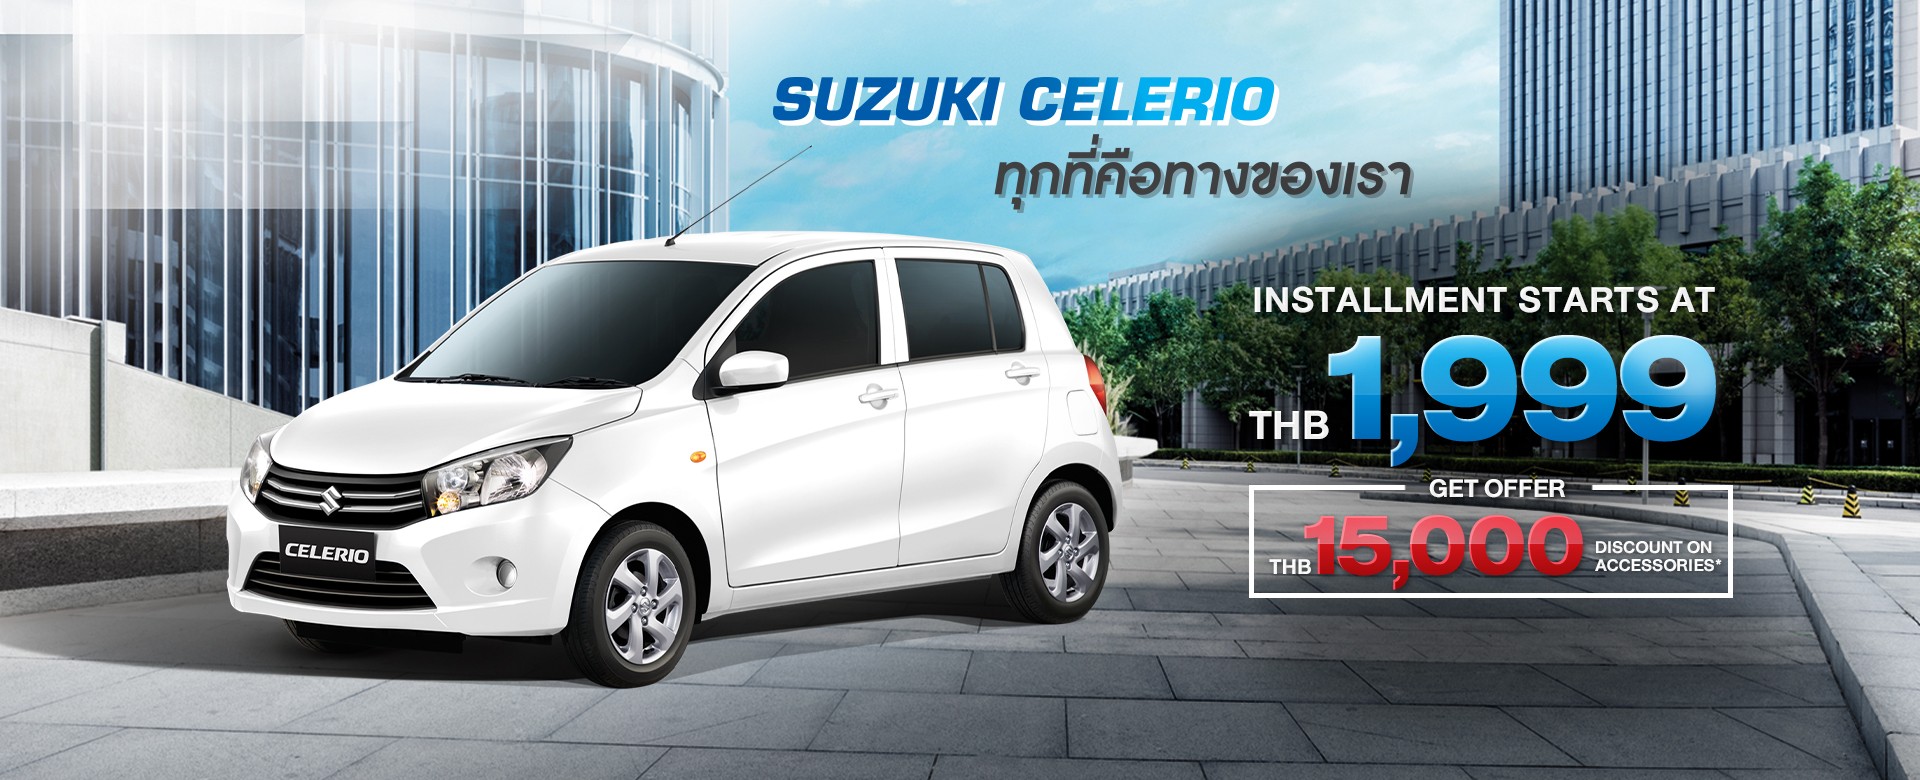 Suzuki CELERIO Promotion